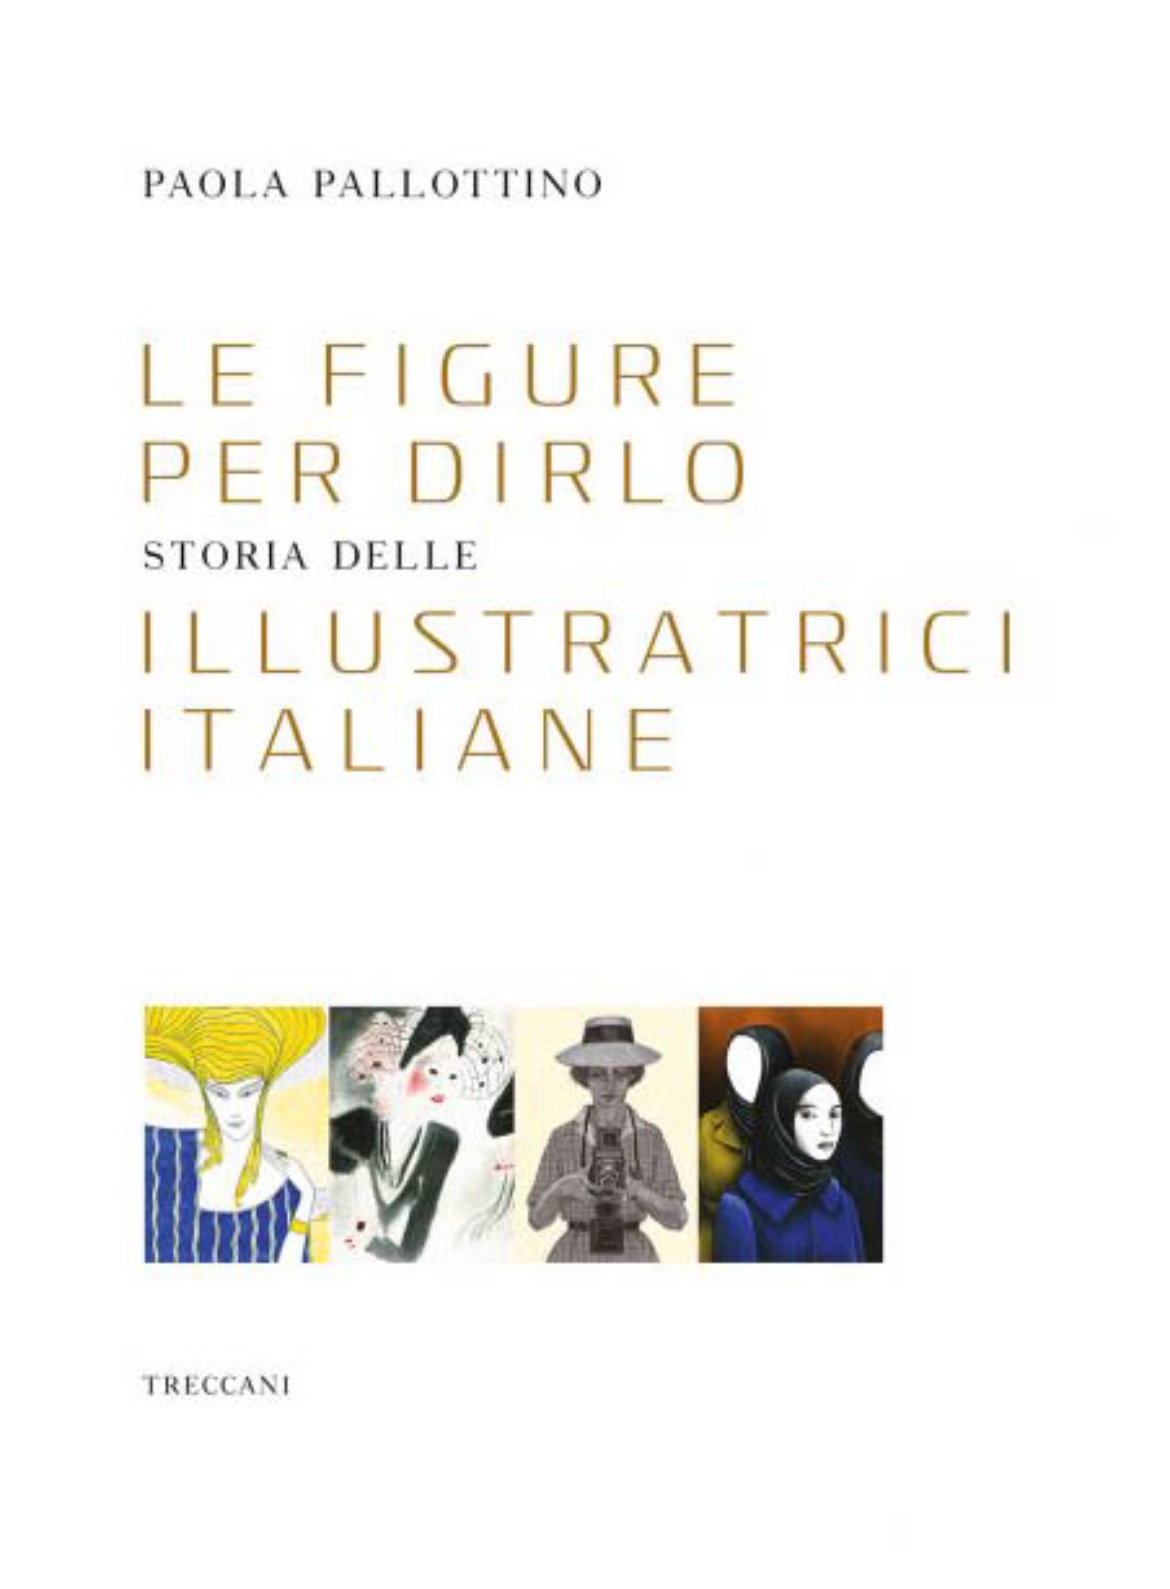 Visualizza la sezione: MUSEO MAN | 'Le figure per dirlo. Storia delle illustratrici italiane' di Paola Pallottino